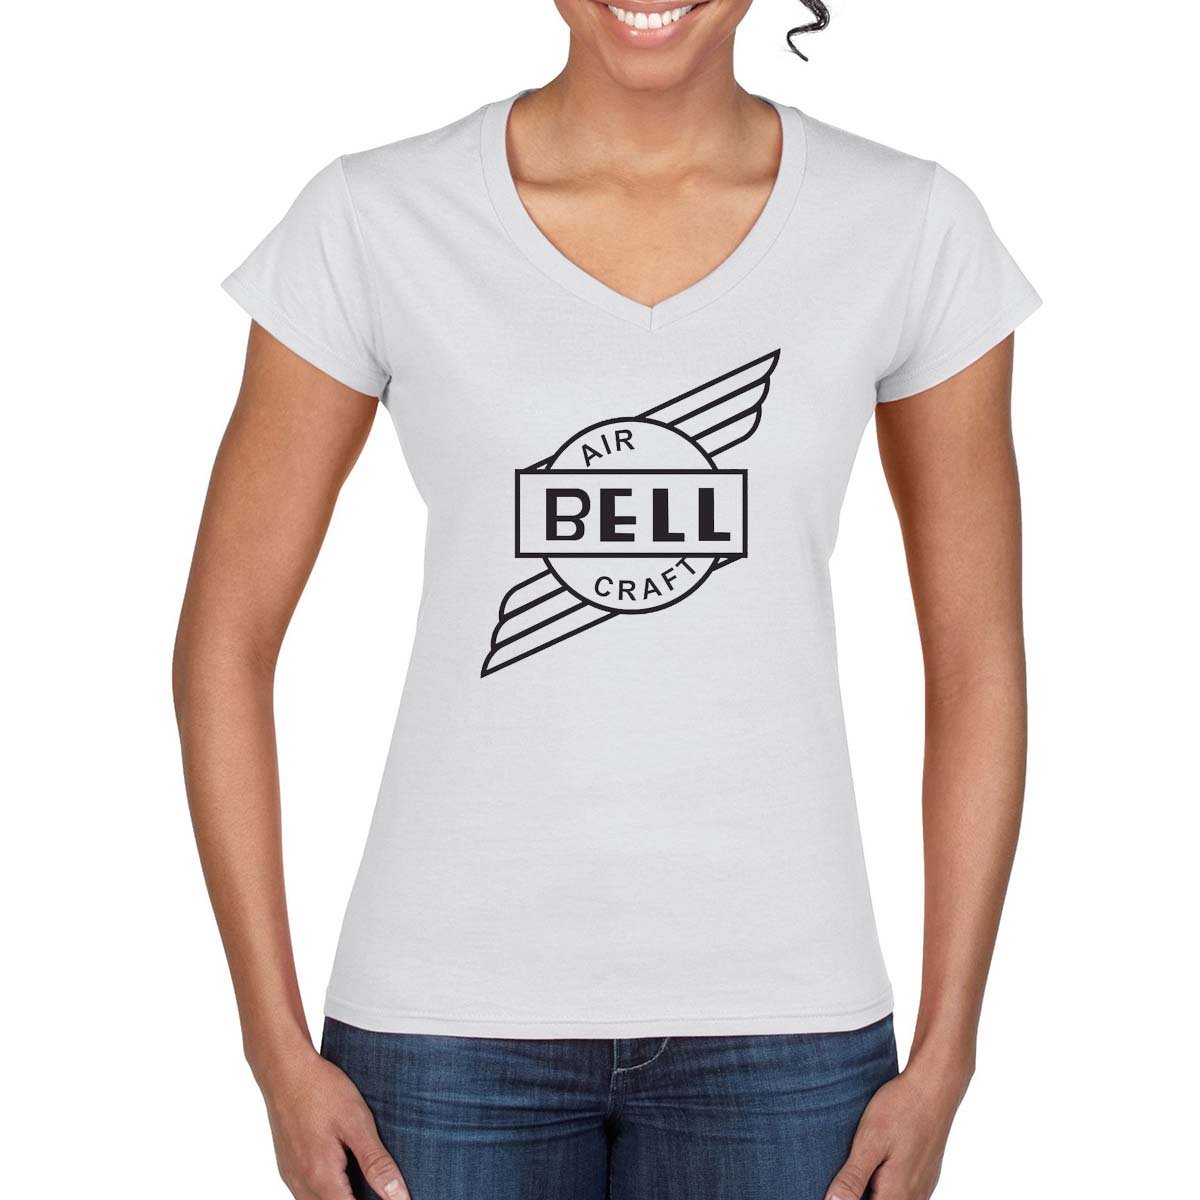 BELL AIRCRAFT Vintage Logo Design on Women's T-Shirt